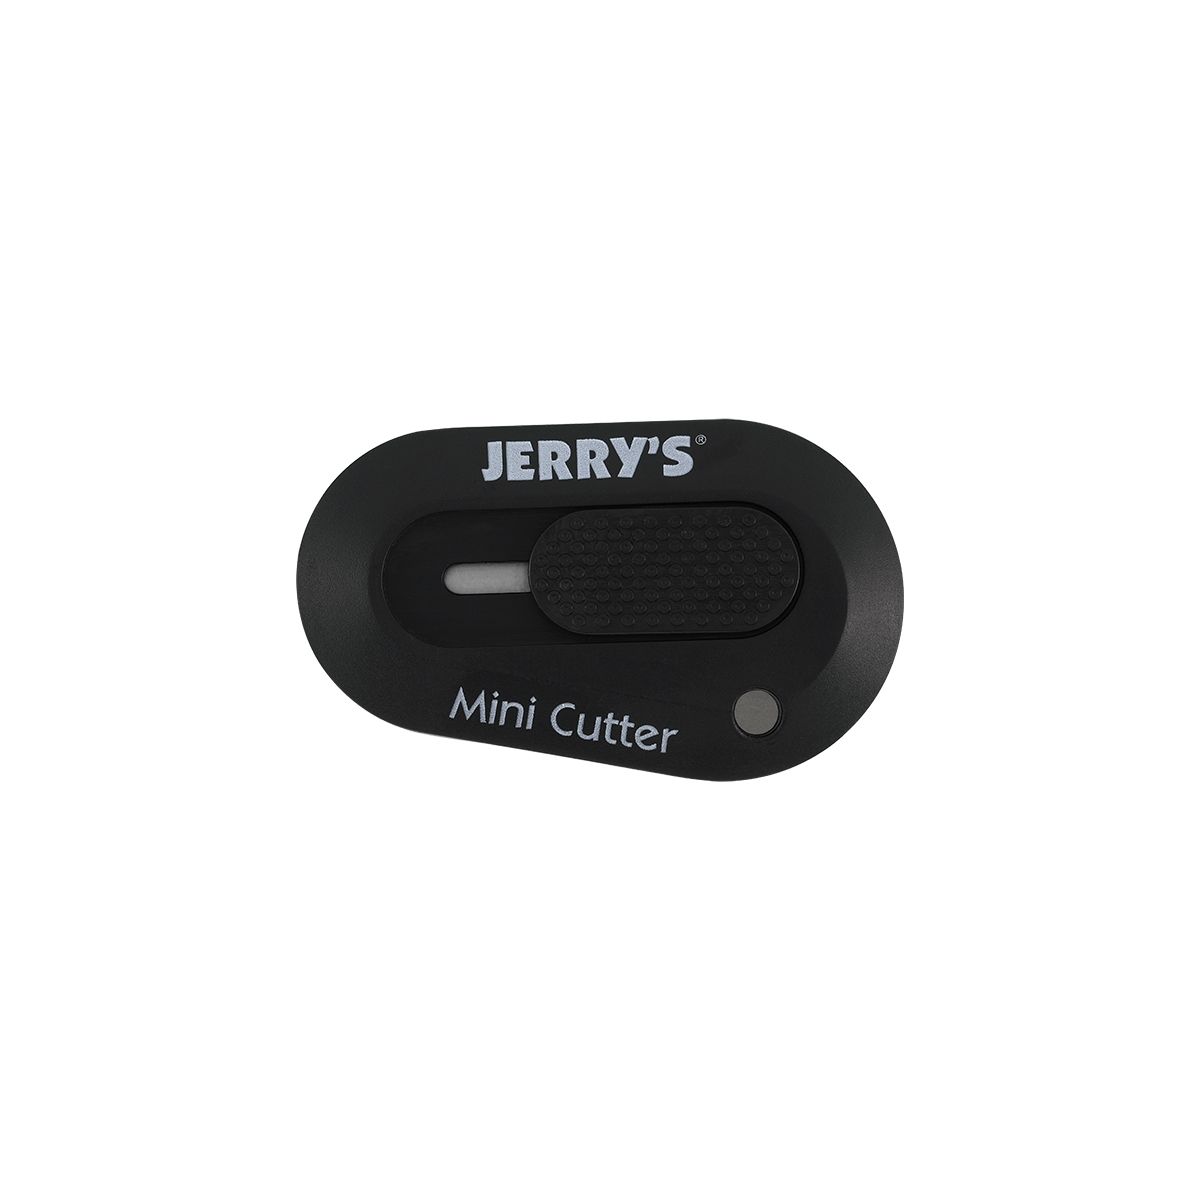 Jerry's Mini Cutter in Black